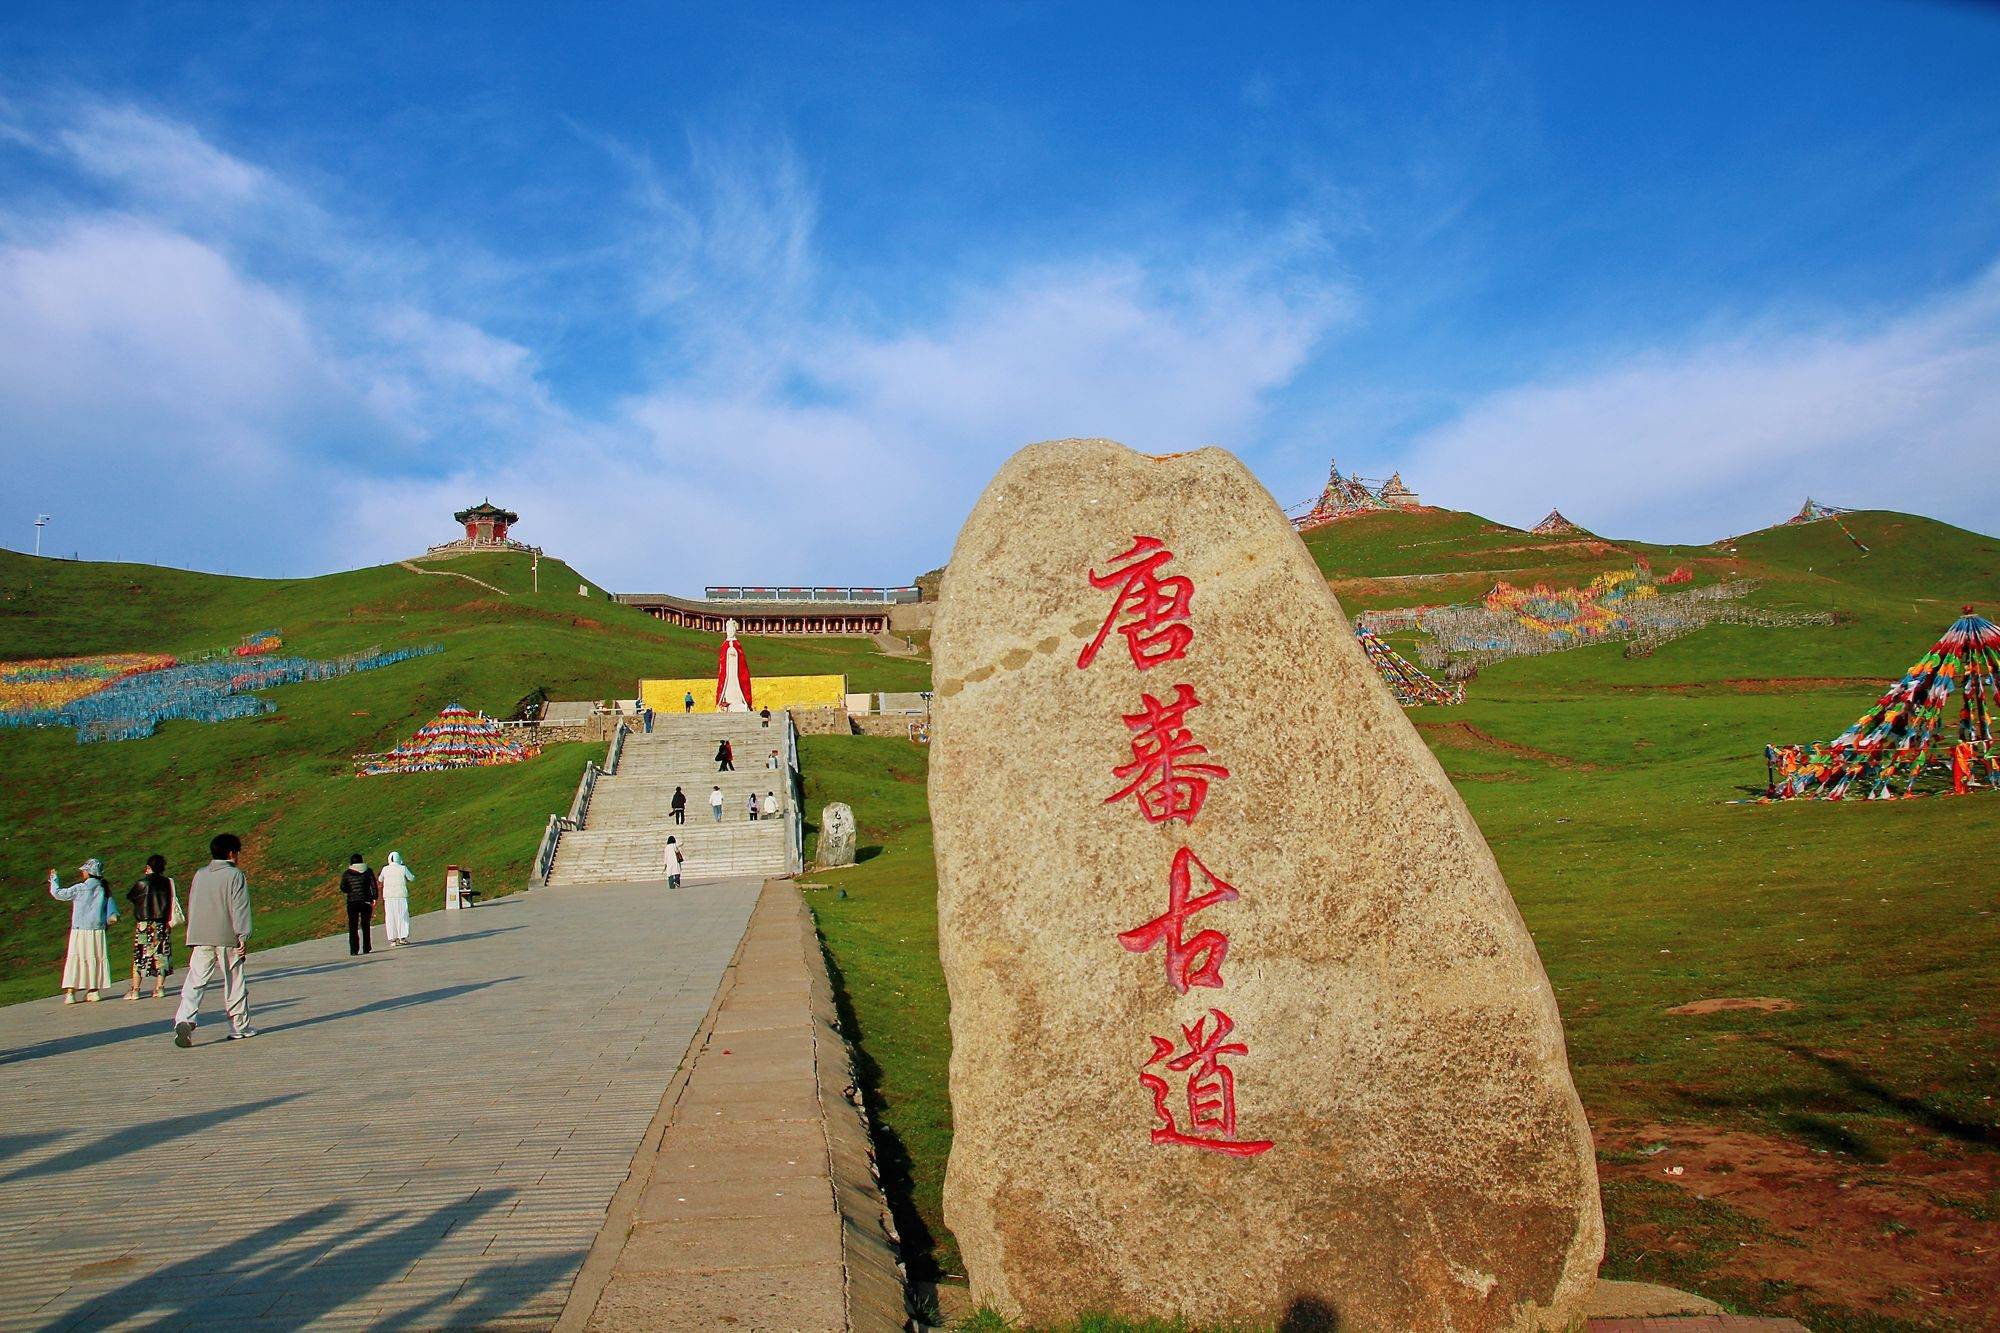 青海日月山文成公主庙,故事脍炙人口,1300多年见证汉藏民族团结